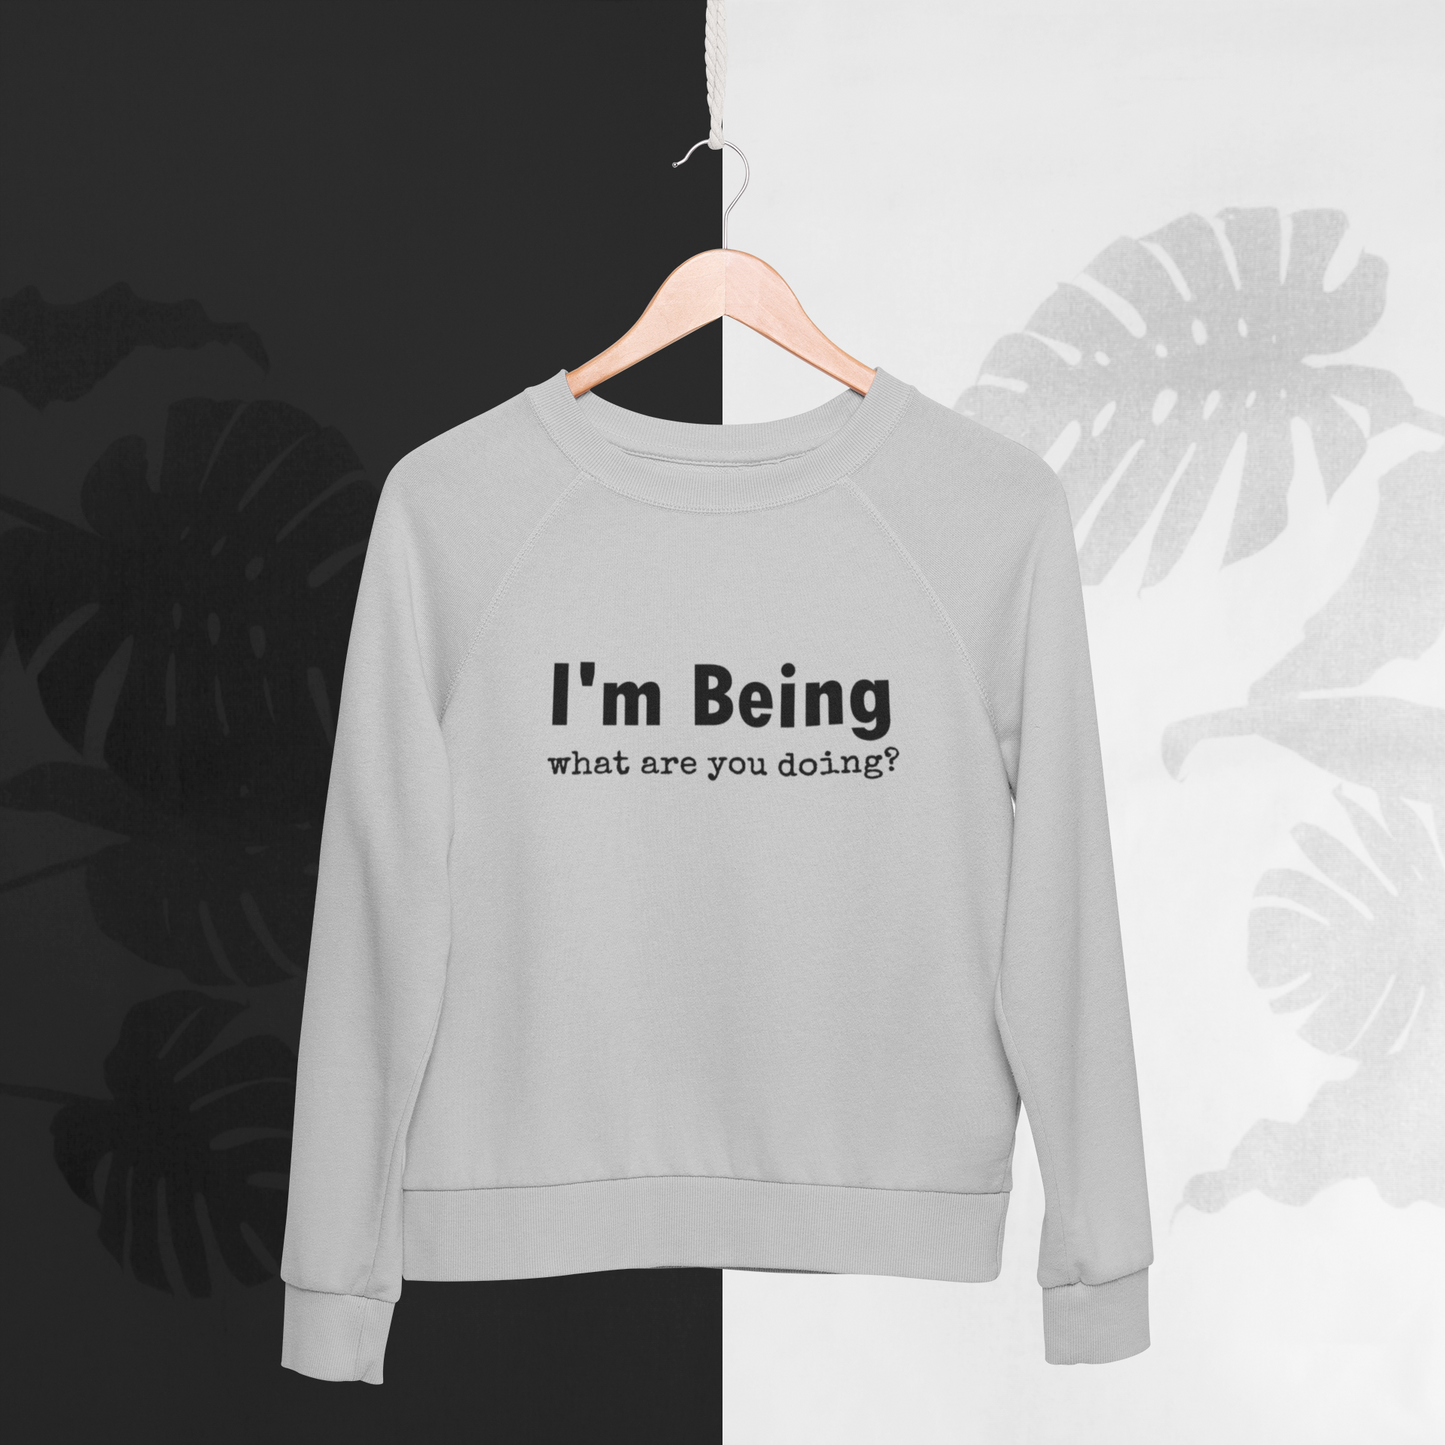 Just BE YOU! Sweatshirt - Yoga wear / Lounge wear